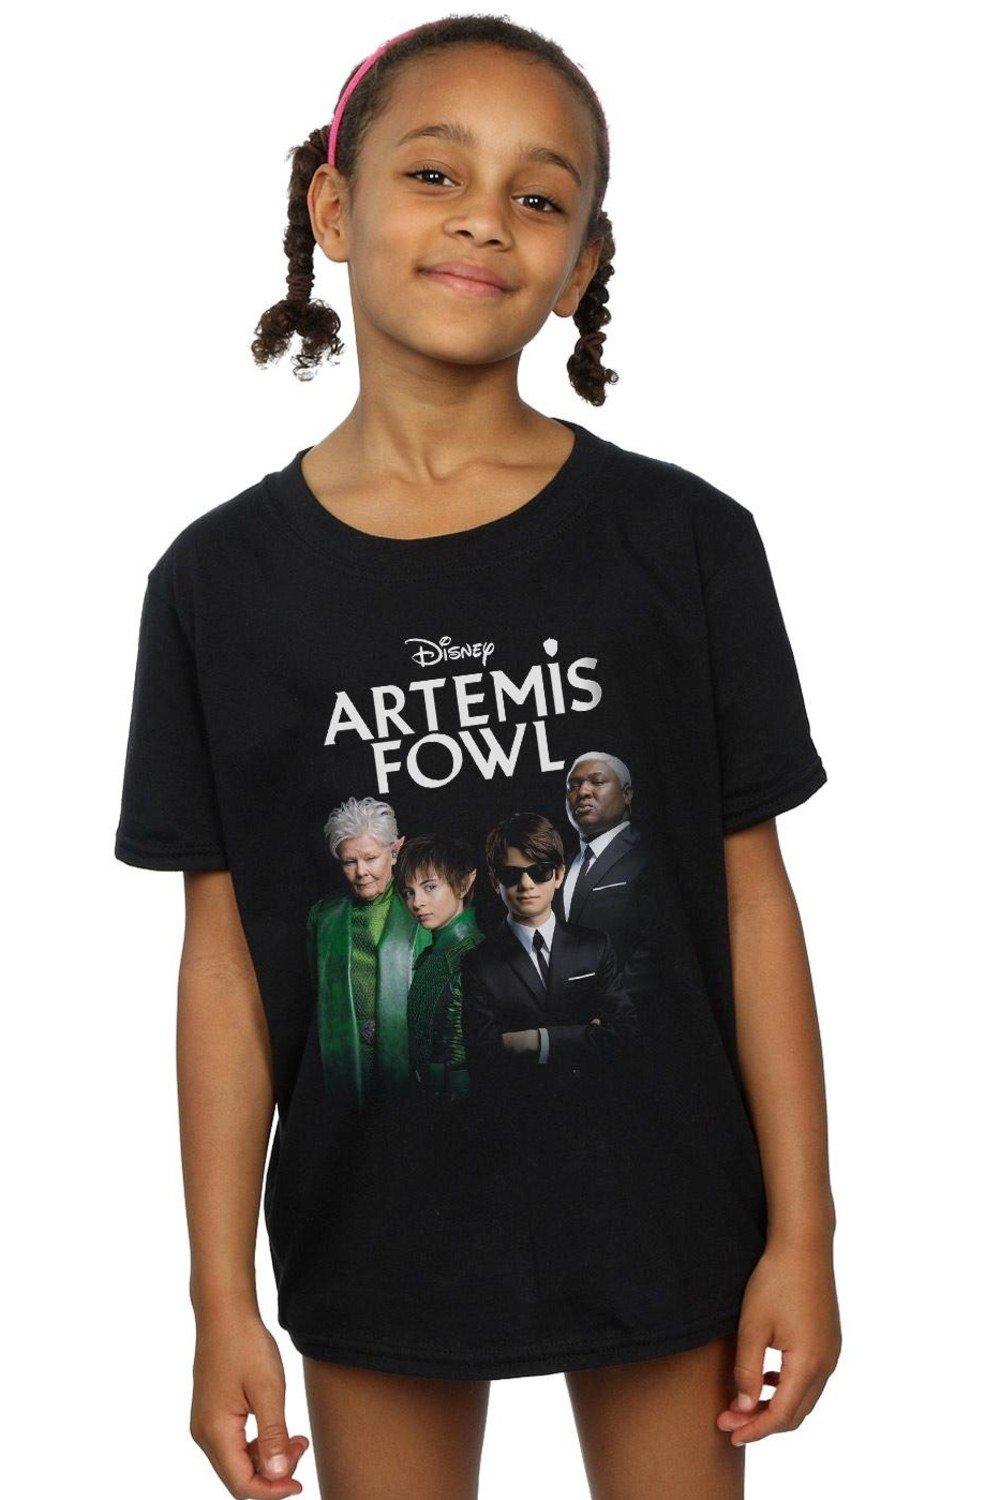 Artemis Fowl Group Photo Cotton T-Shirt